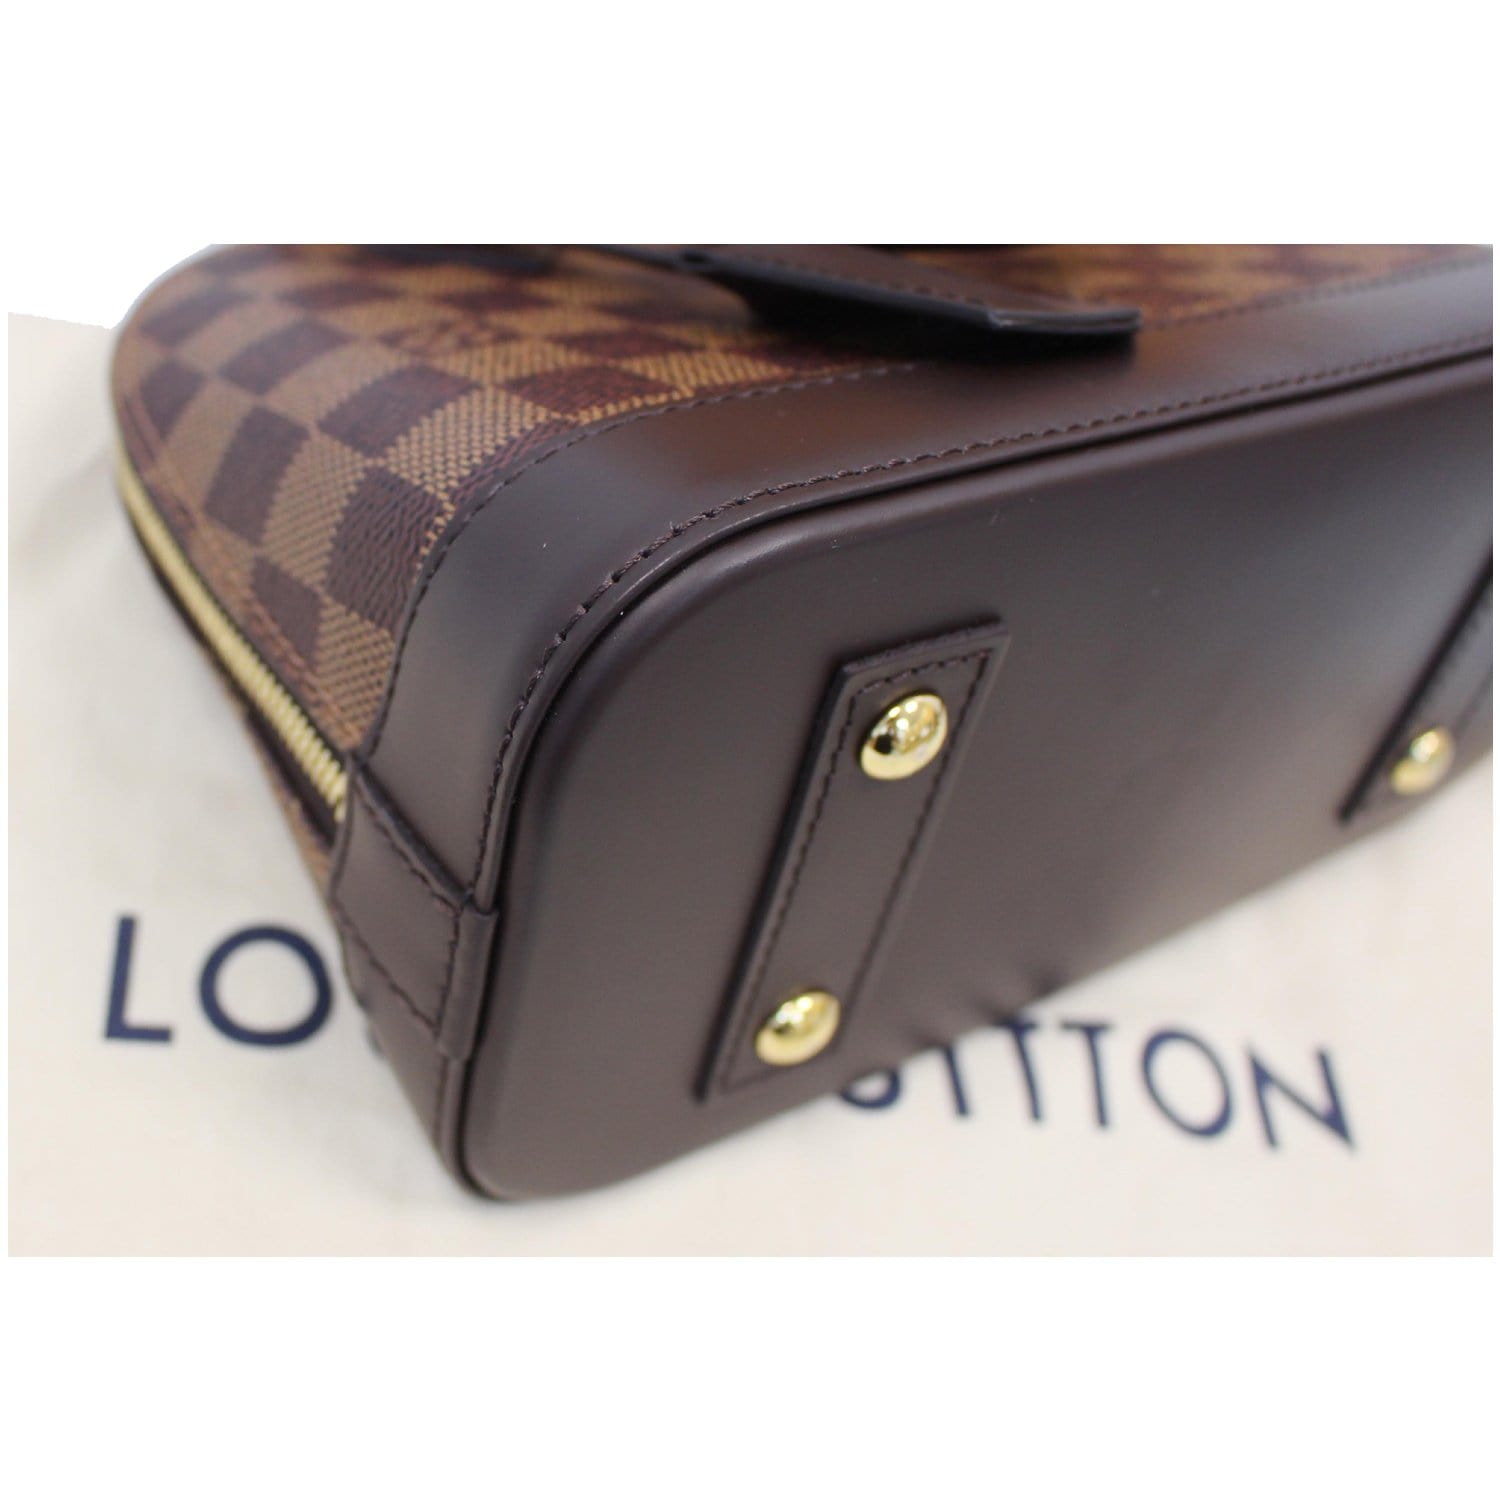 Louis Vuitton, Alma BB Damier plain, brown-checked rubbe…